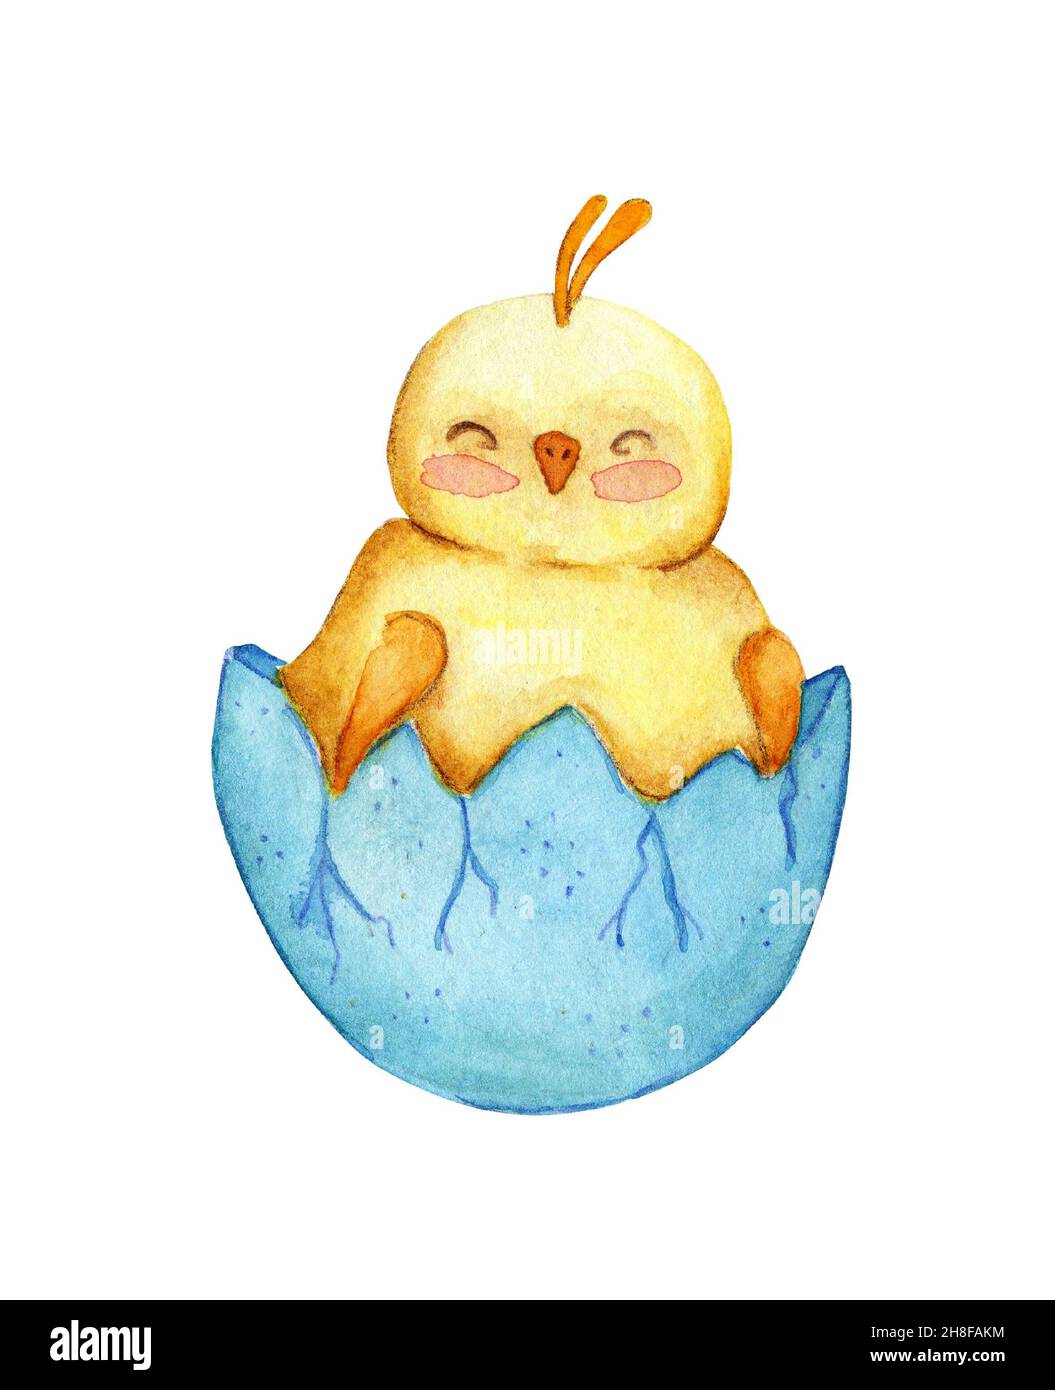 Illustration aquarelle d'un joli petit poulet jaune assis dans une coquille.Dessin d'un poussin éclos pour enfants.Pâques, religion, tradition.Isol Banque D'Images